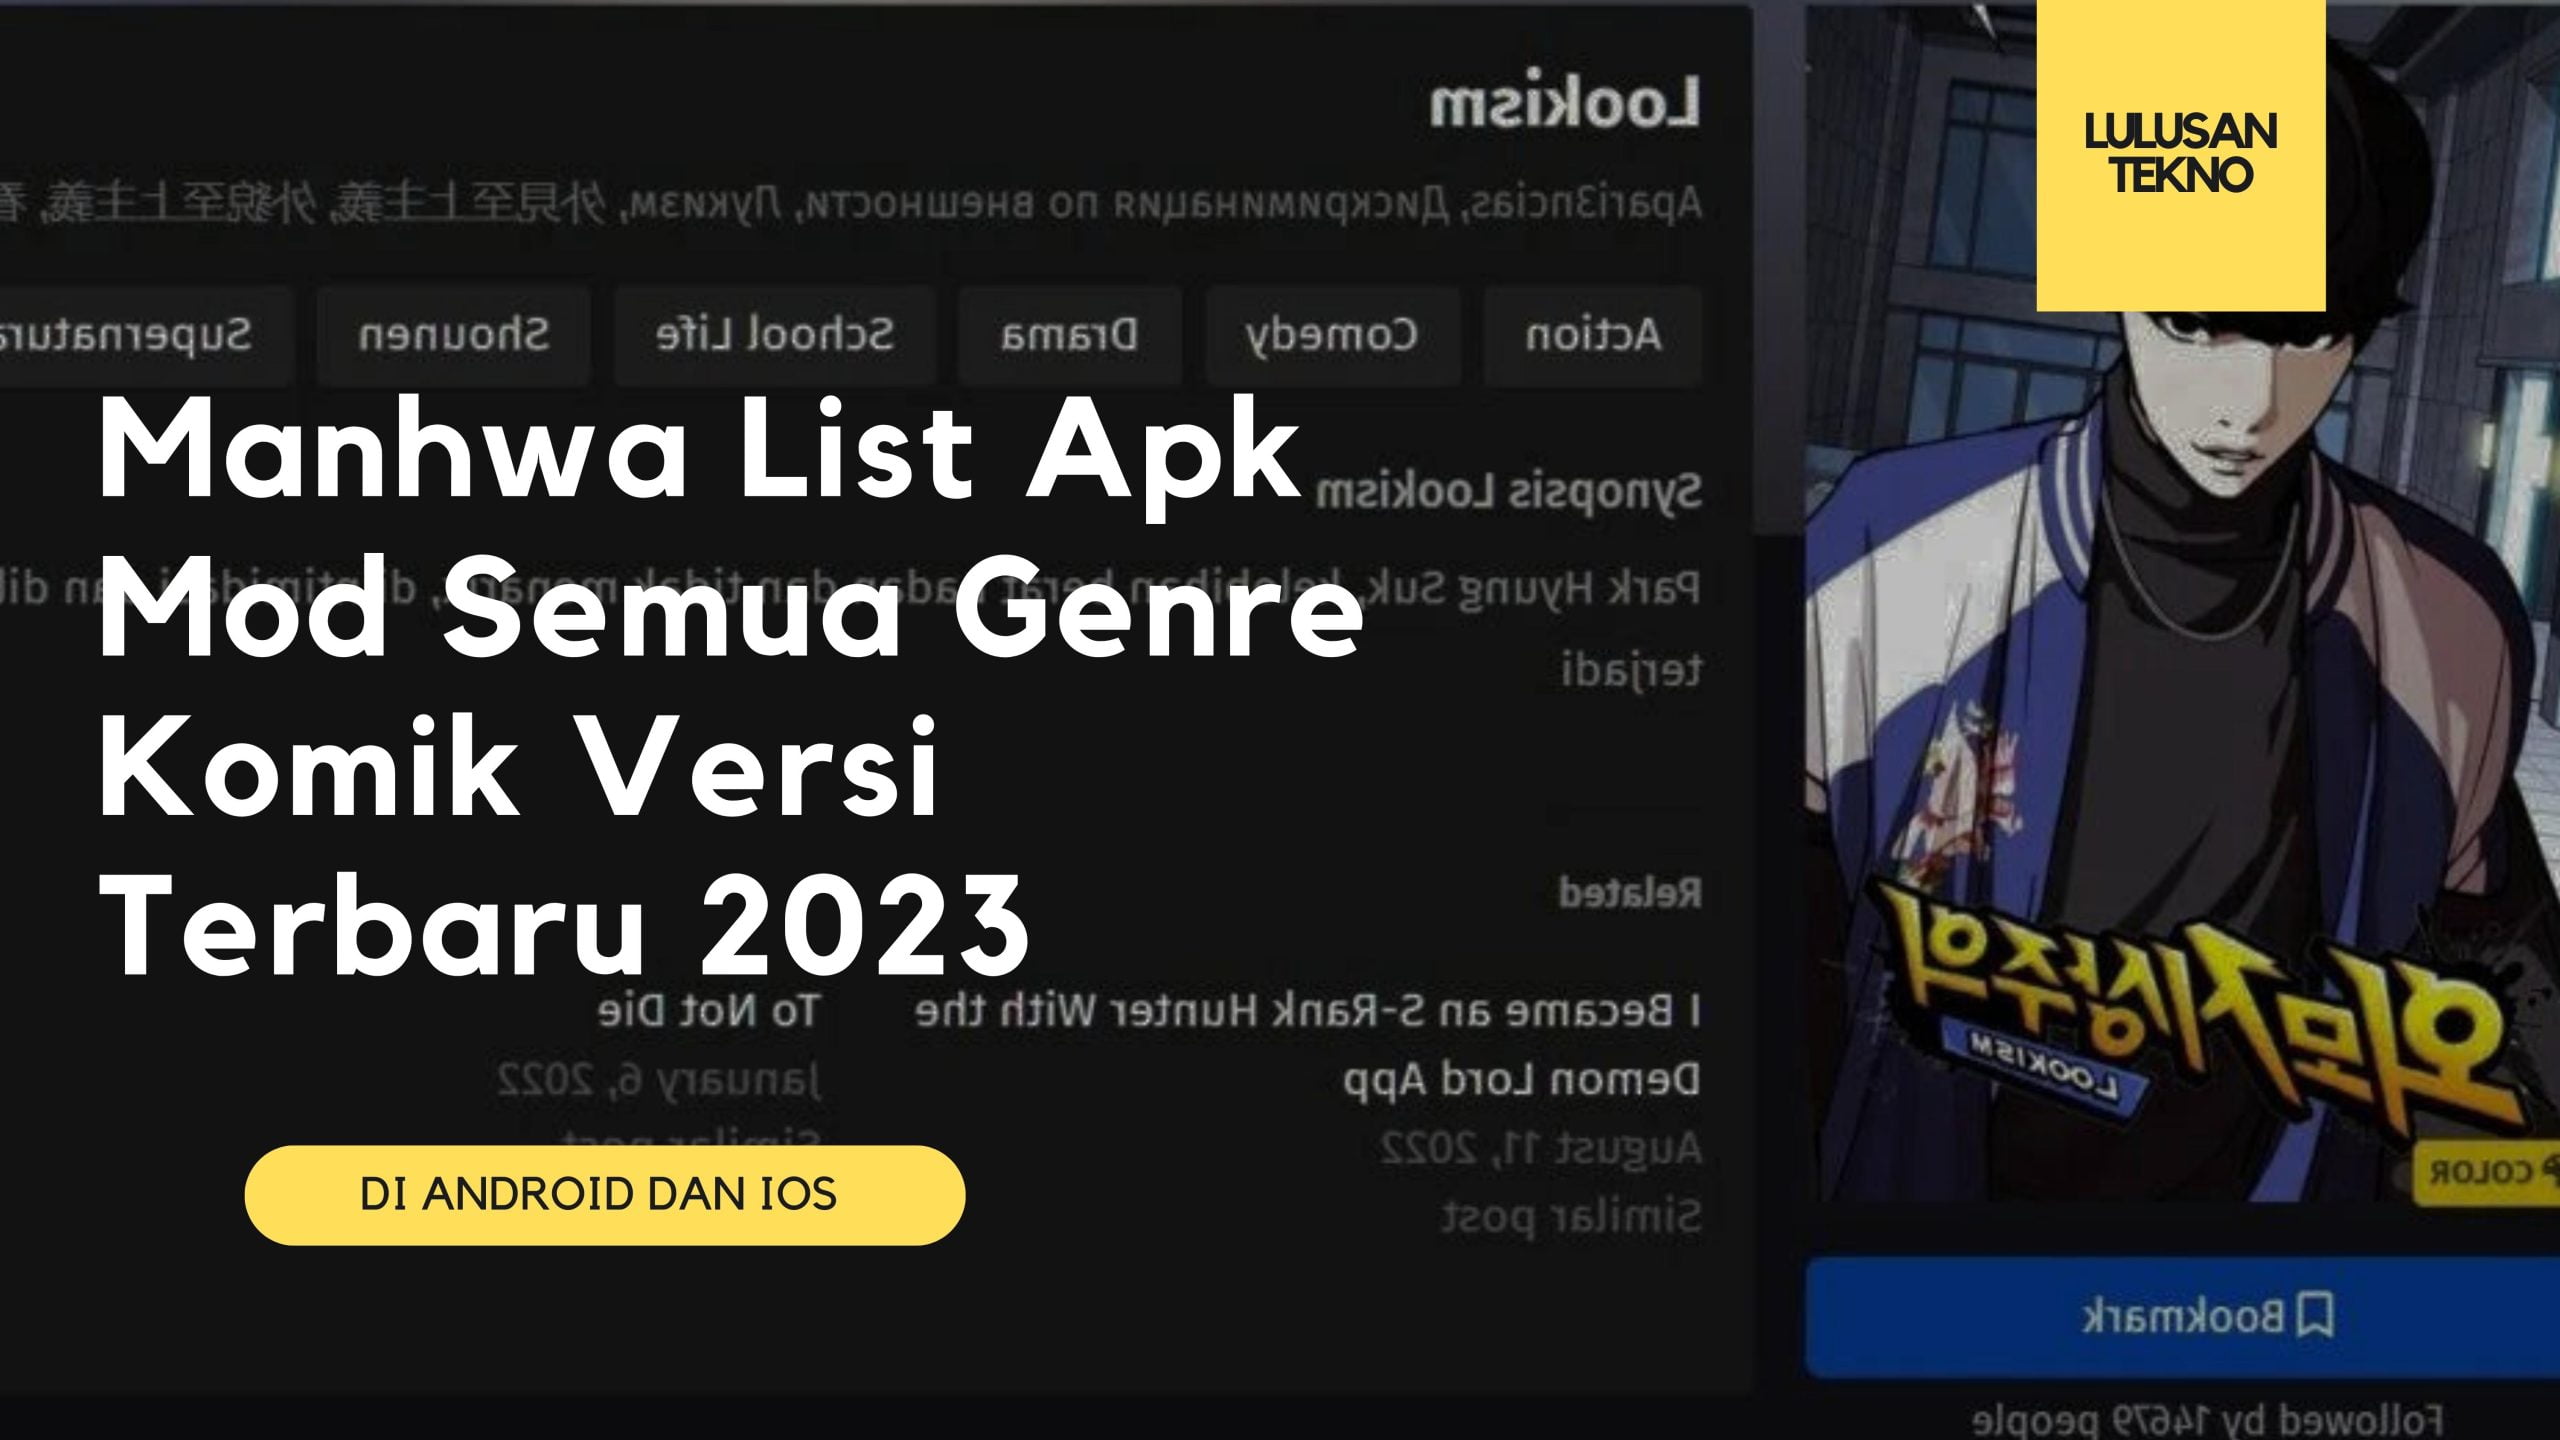 Manhwa List Apk Mod Semua Genre Komik Versi Terbaru 2023